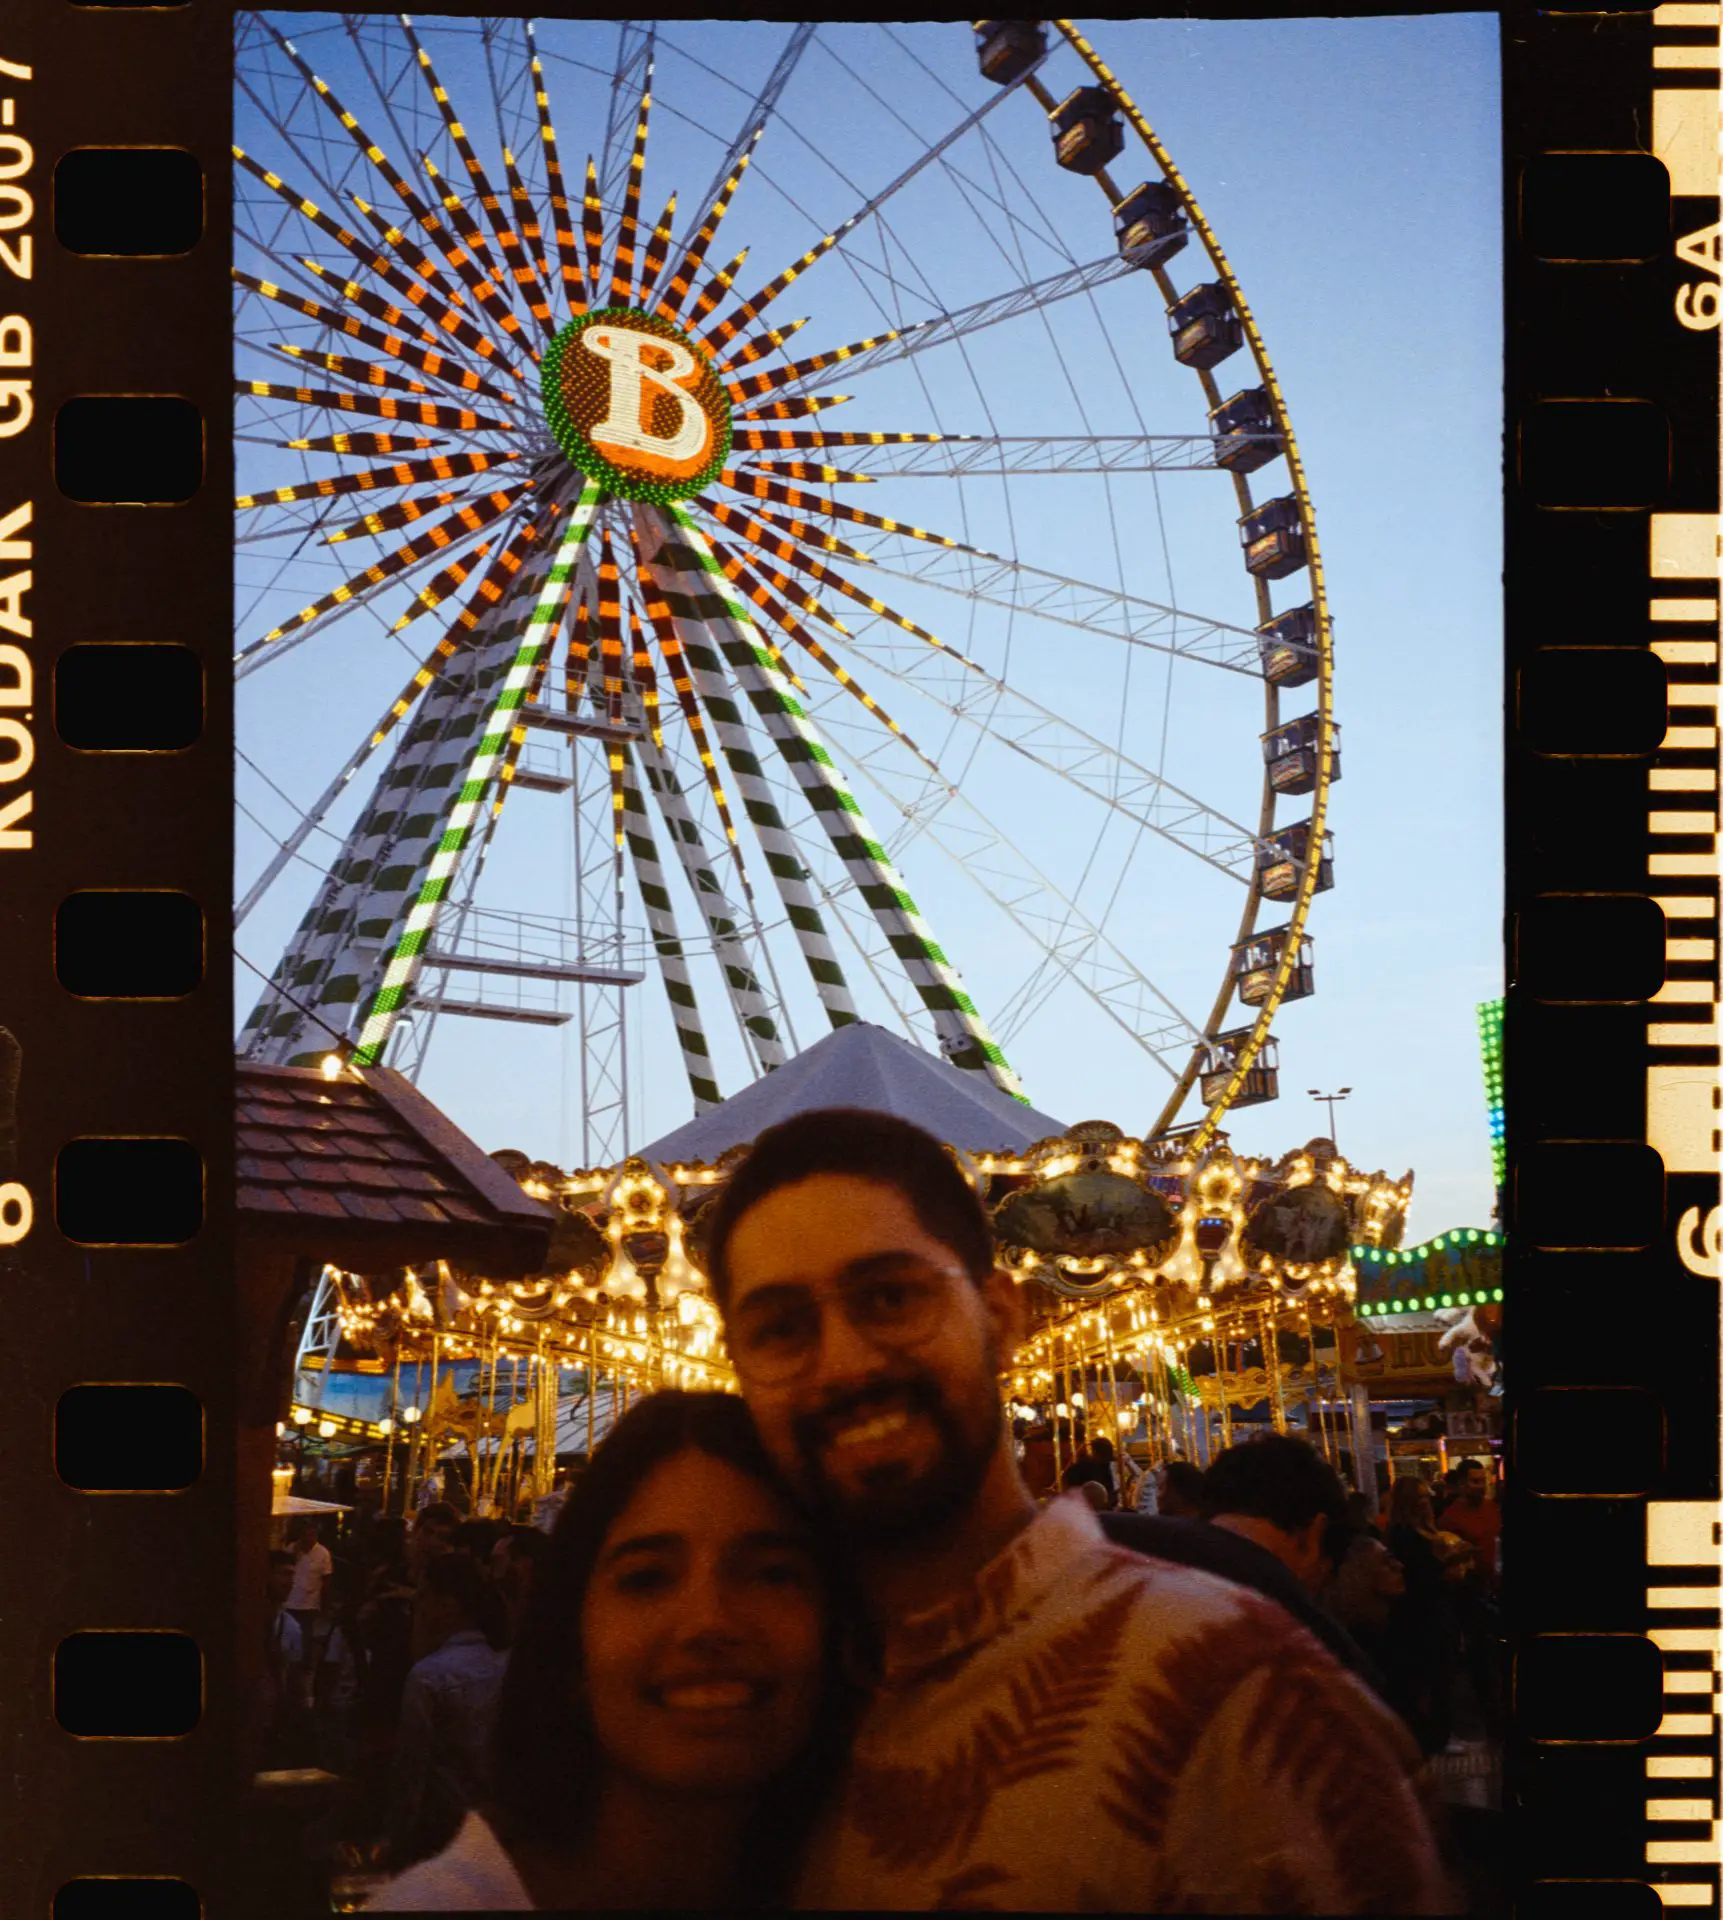 Portrait in front of the Ferris wheel